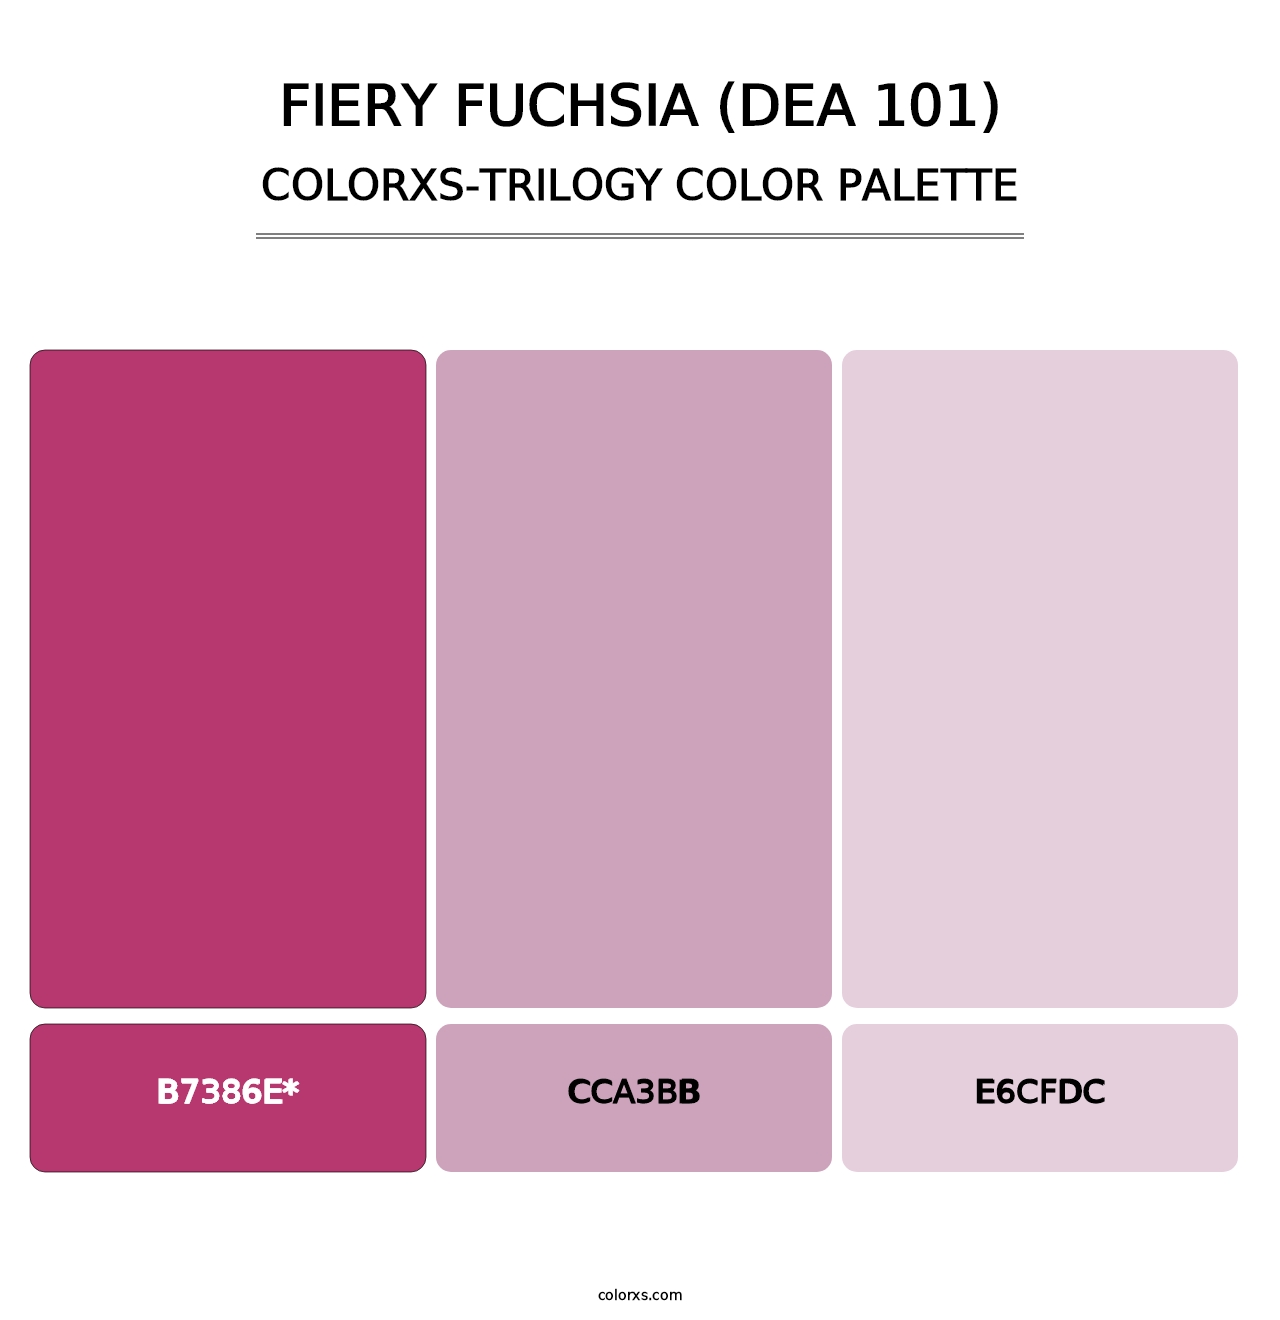 Fiery Fuchsia (DEA 101) - Colorxs Trilogy Palette